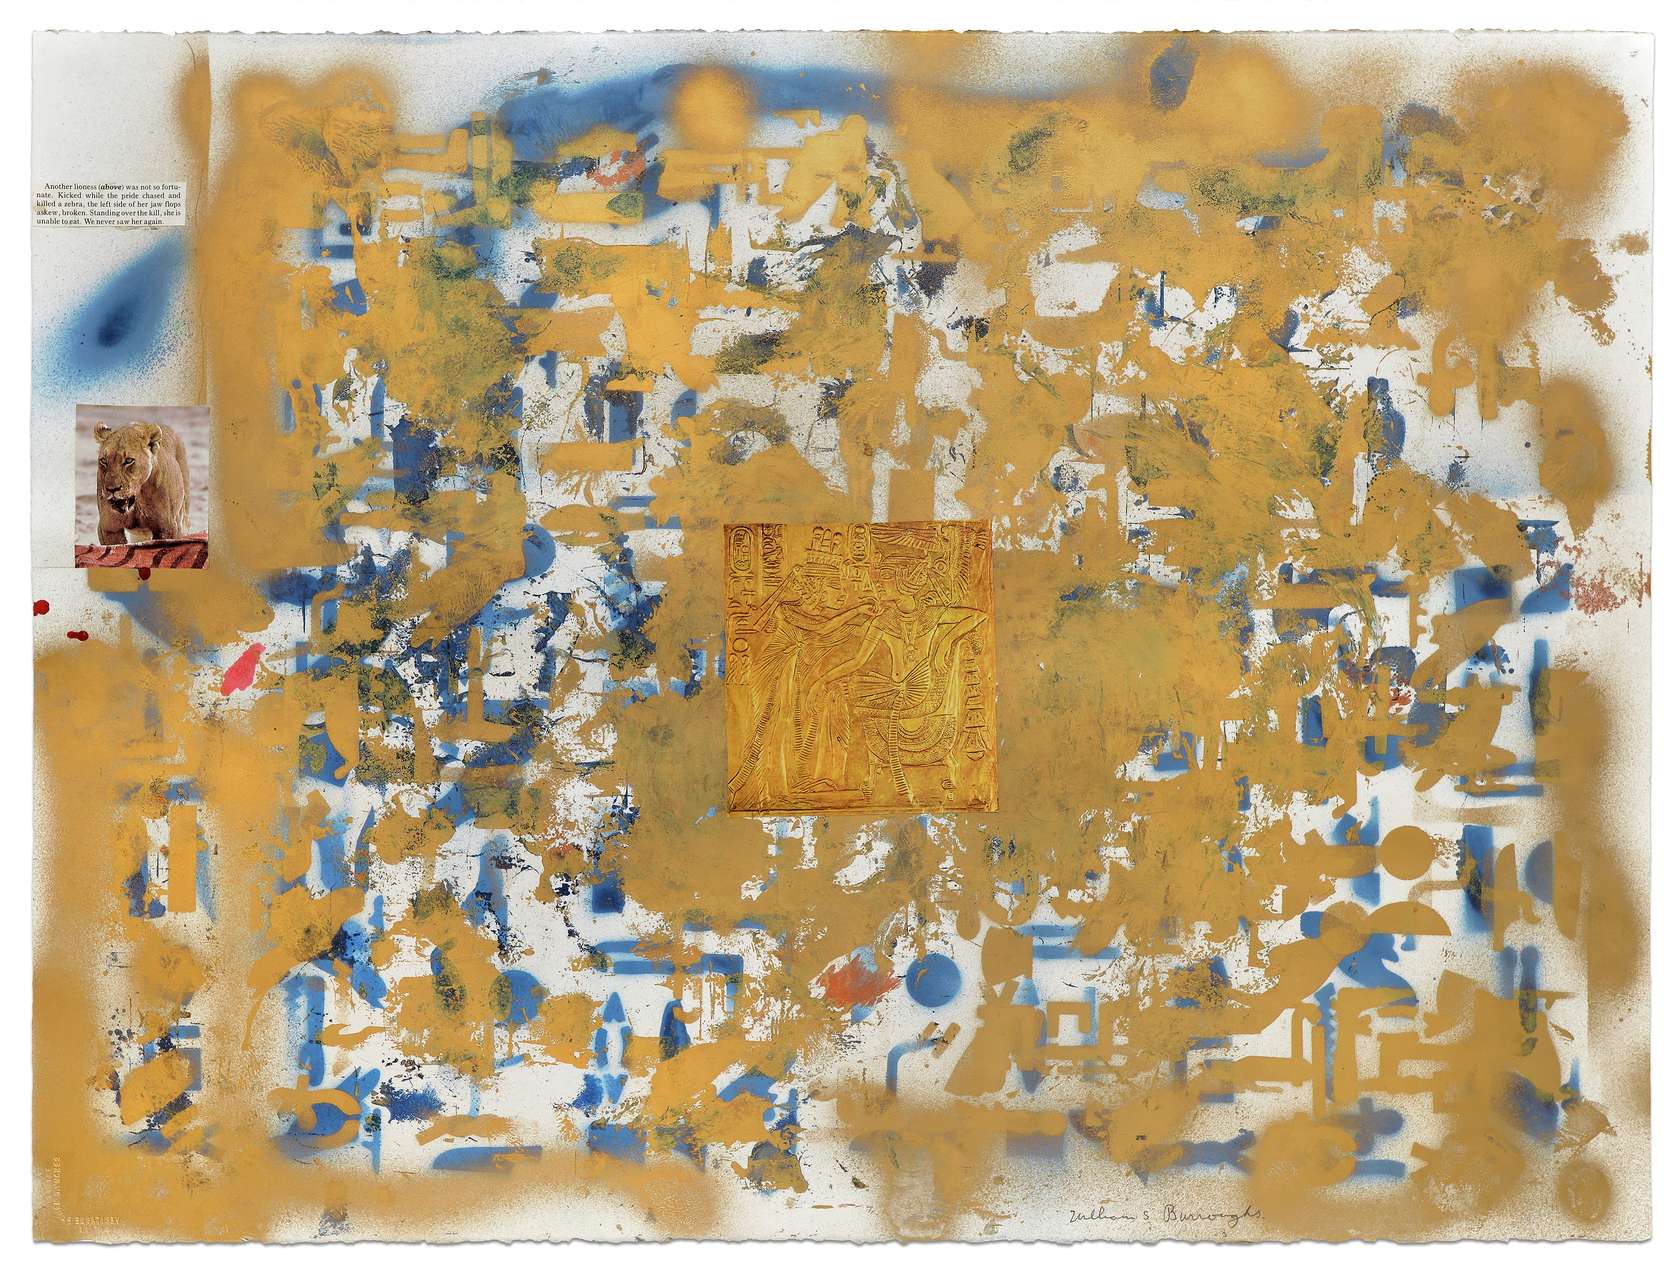 William S. Burroughs, End of the Line, 1987 Peinture aérosol et collage sur papier56 × 76 cm / 22  × 29 7/8 in. | 76.5 × 95.5 cm / 30 1/8 × 37 5/8 in. (encadré/framed)